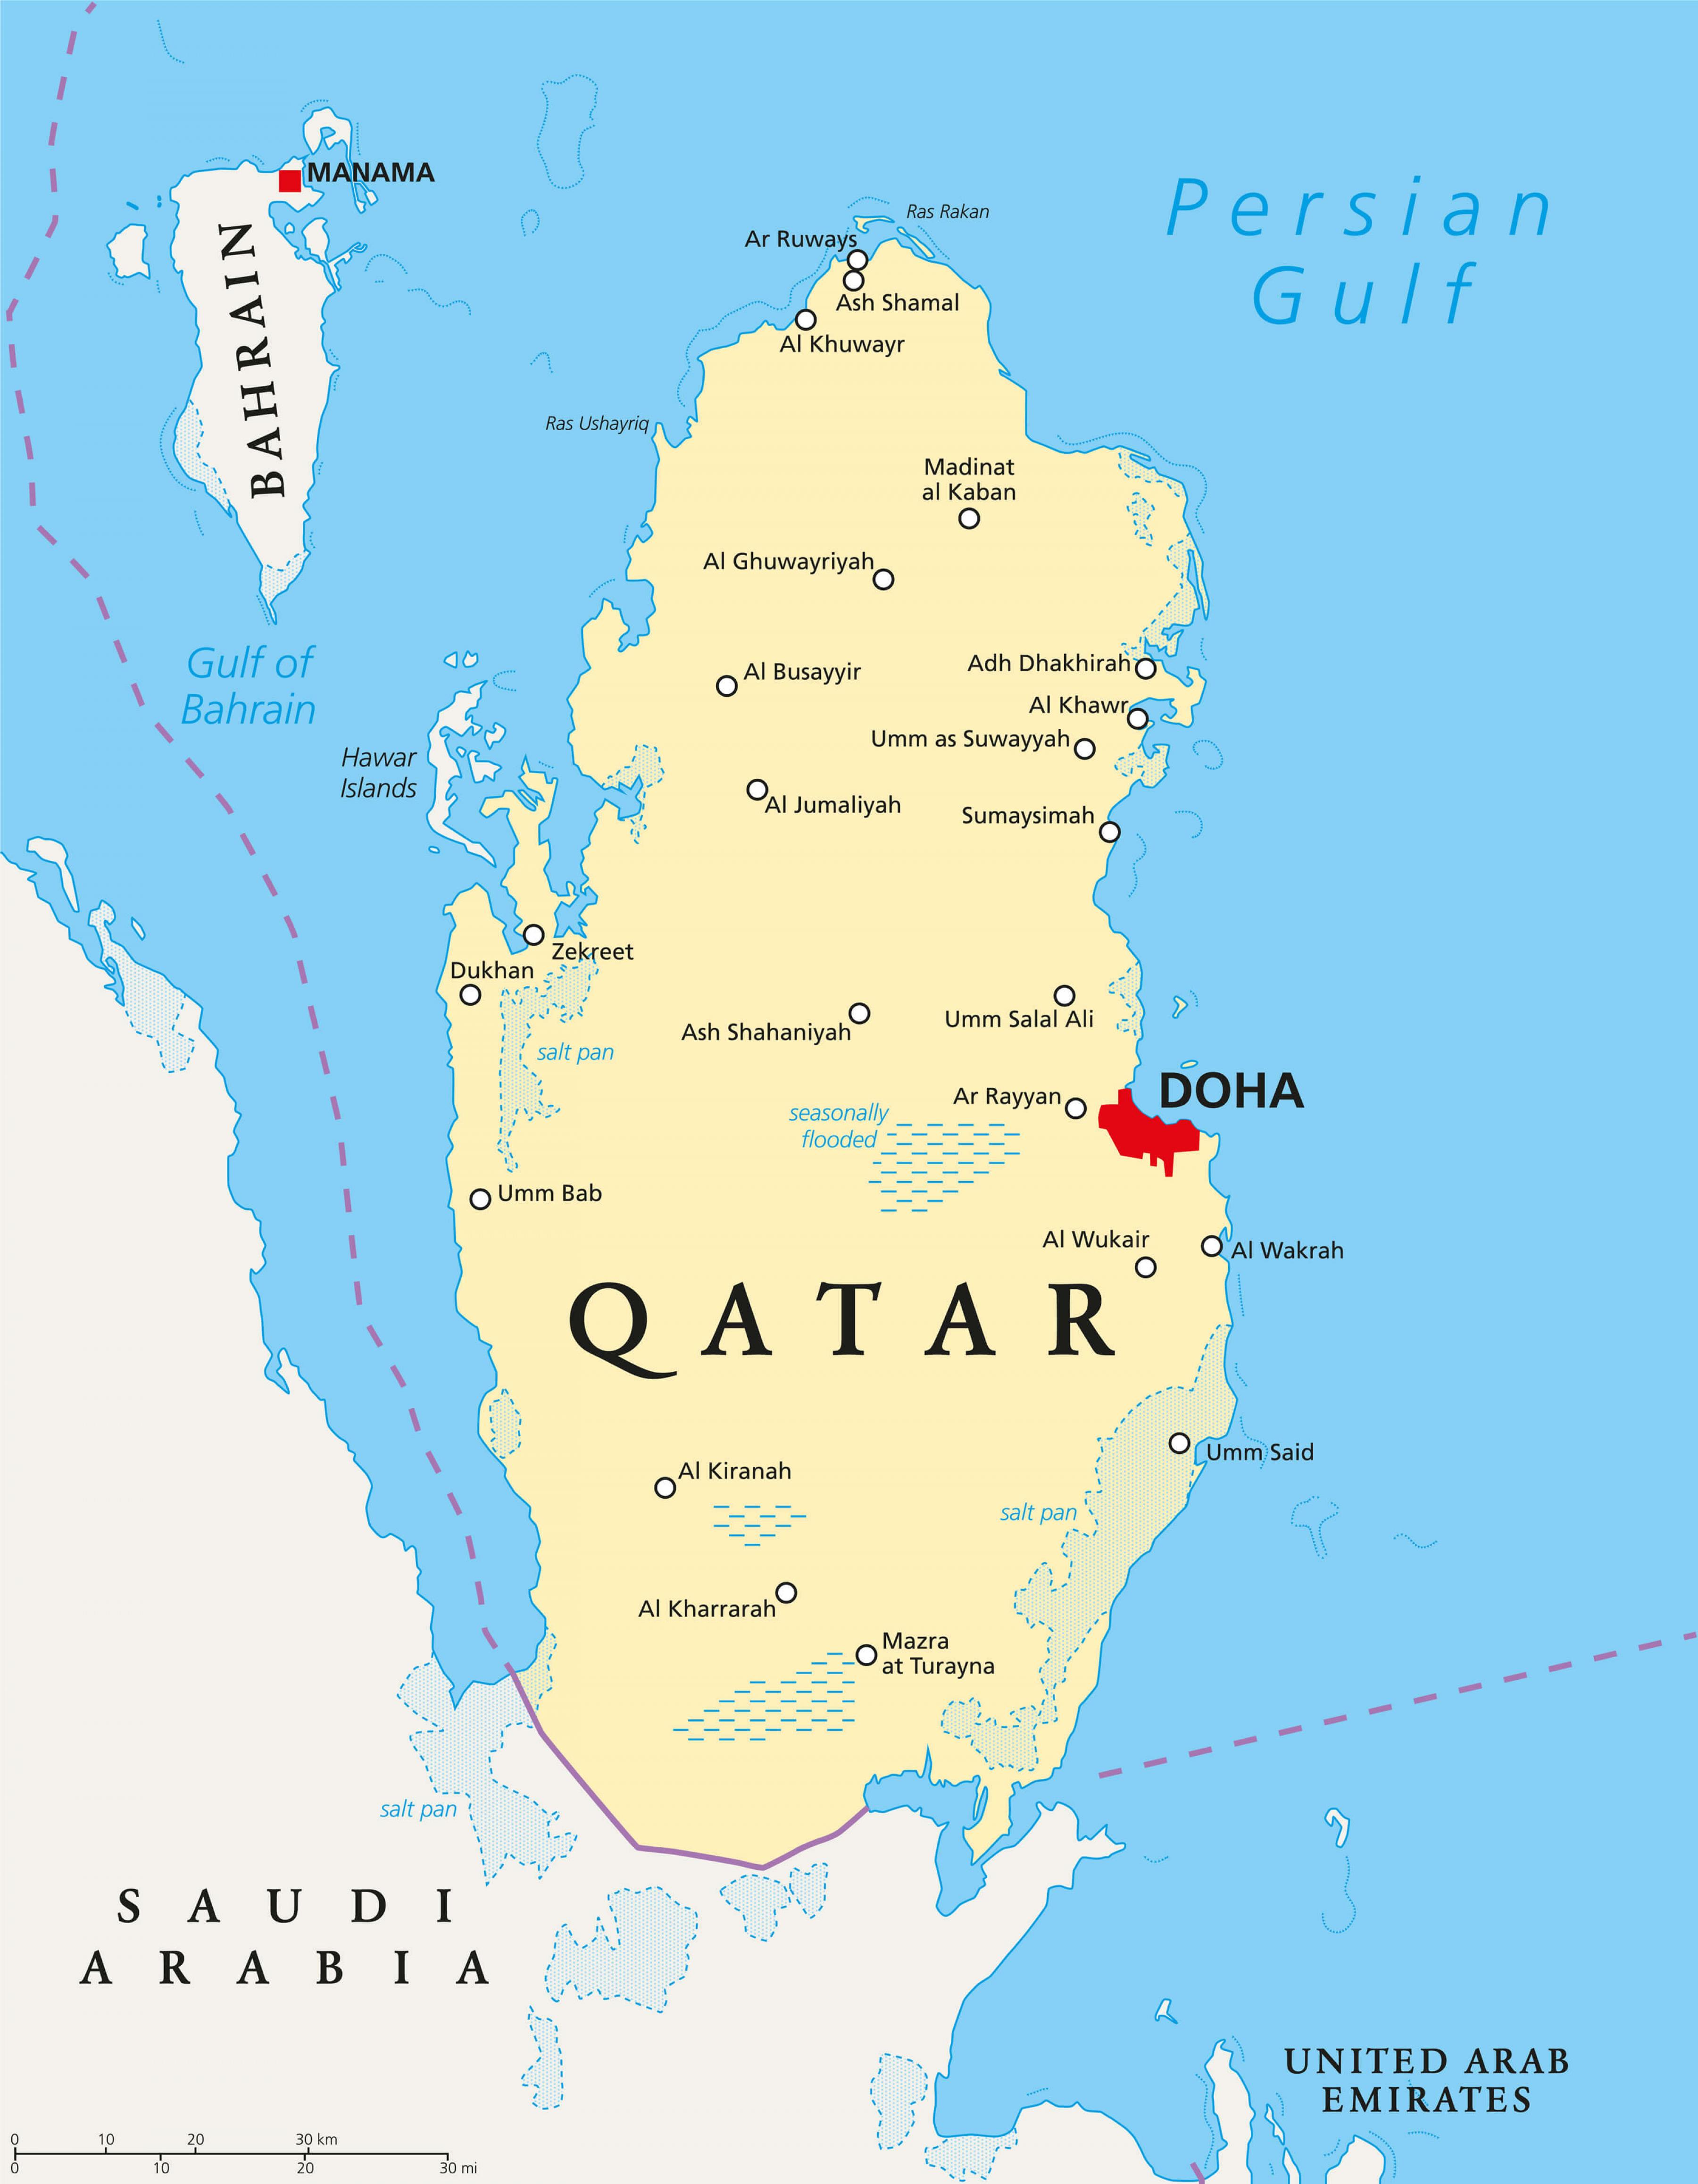 katar térkép Katar városok térkép   Katar térkép városok (Nyugat Ázsia   Asia) katar térkép